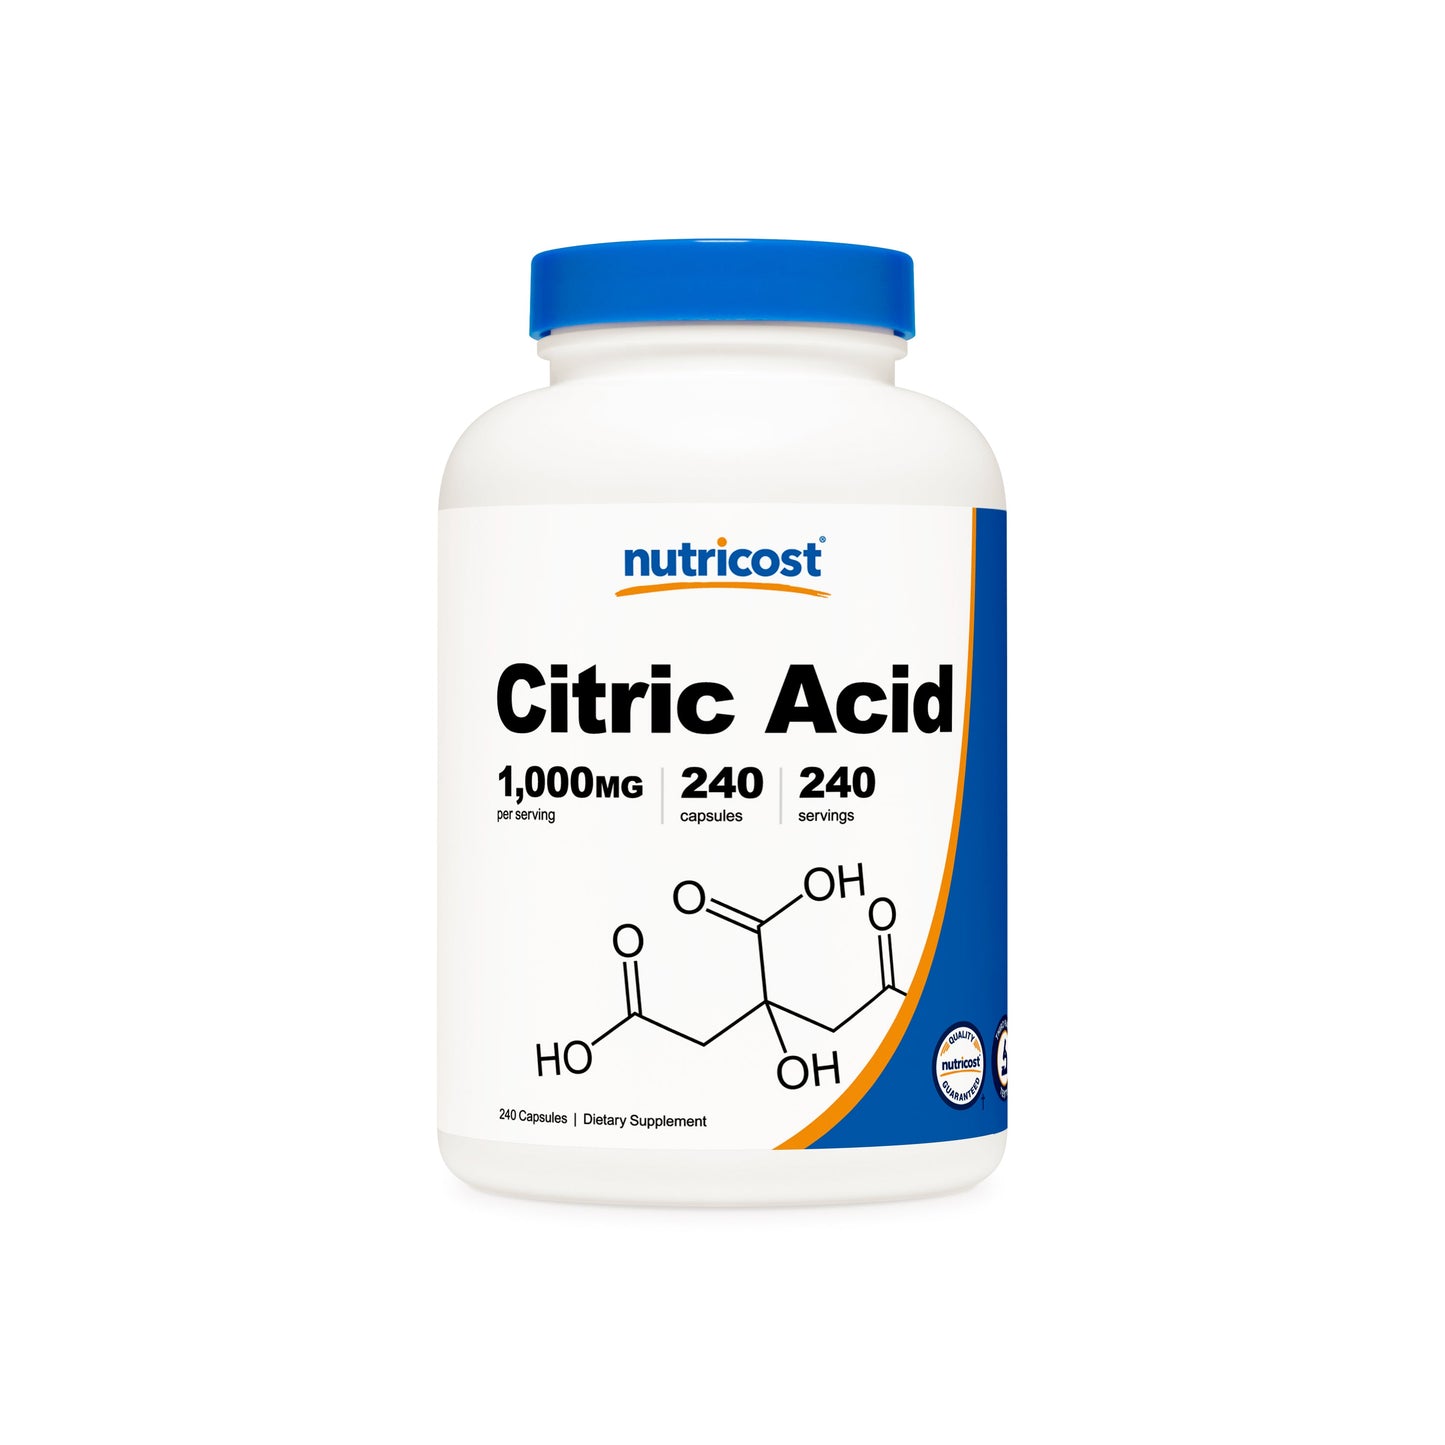 Nutricost Citric Acid Capsules